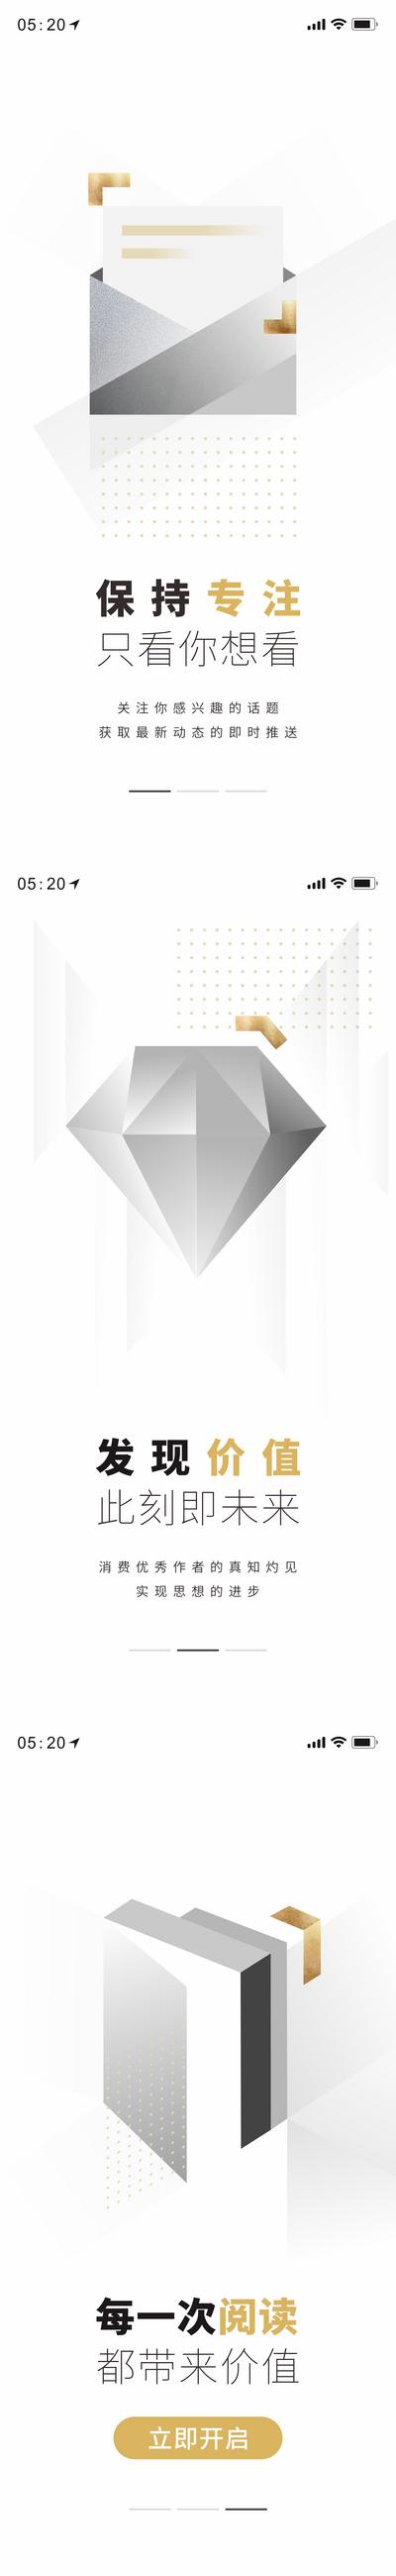 南门网 海报 阅读 金融 理财 系列 钻石